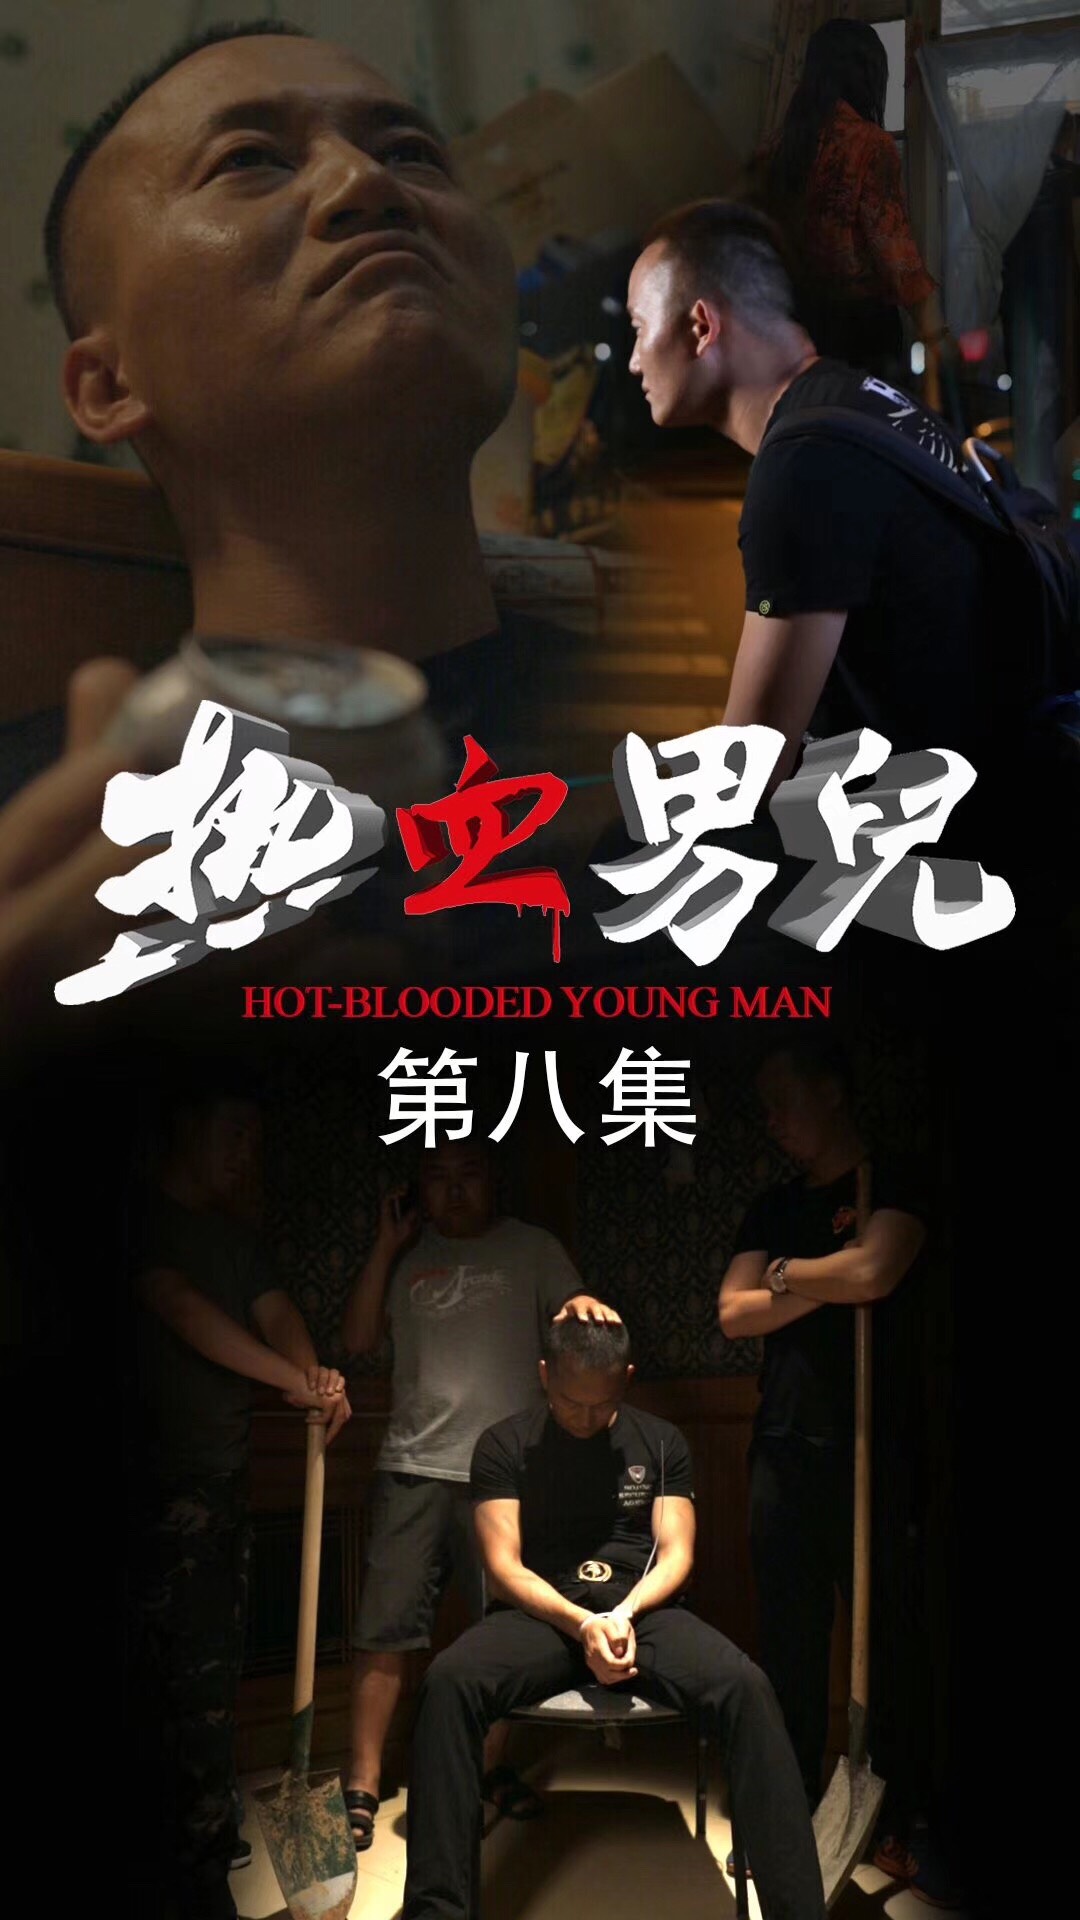 由华视搜星释行啸导演执导的首部竖屏电影《热血男儿》，正在快手热播。